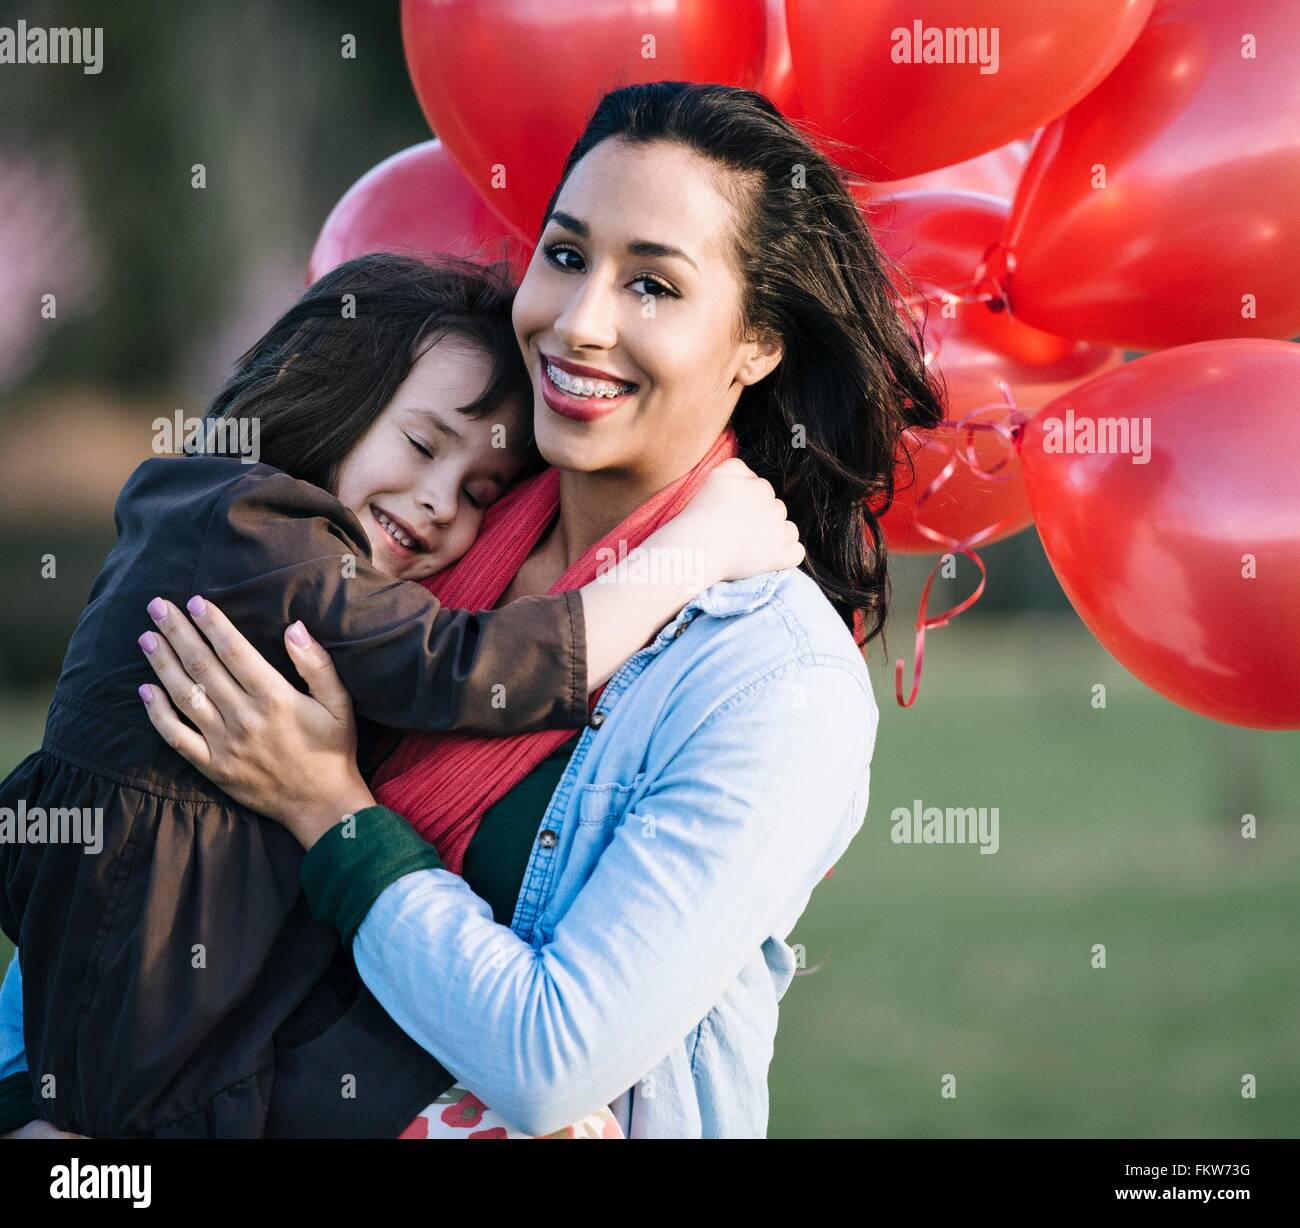 Ritratto di ragazza con mazzo di palloncini rossi abbracciando la madre in posizione di parcheggio Foto Stock